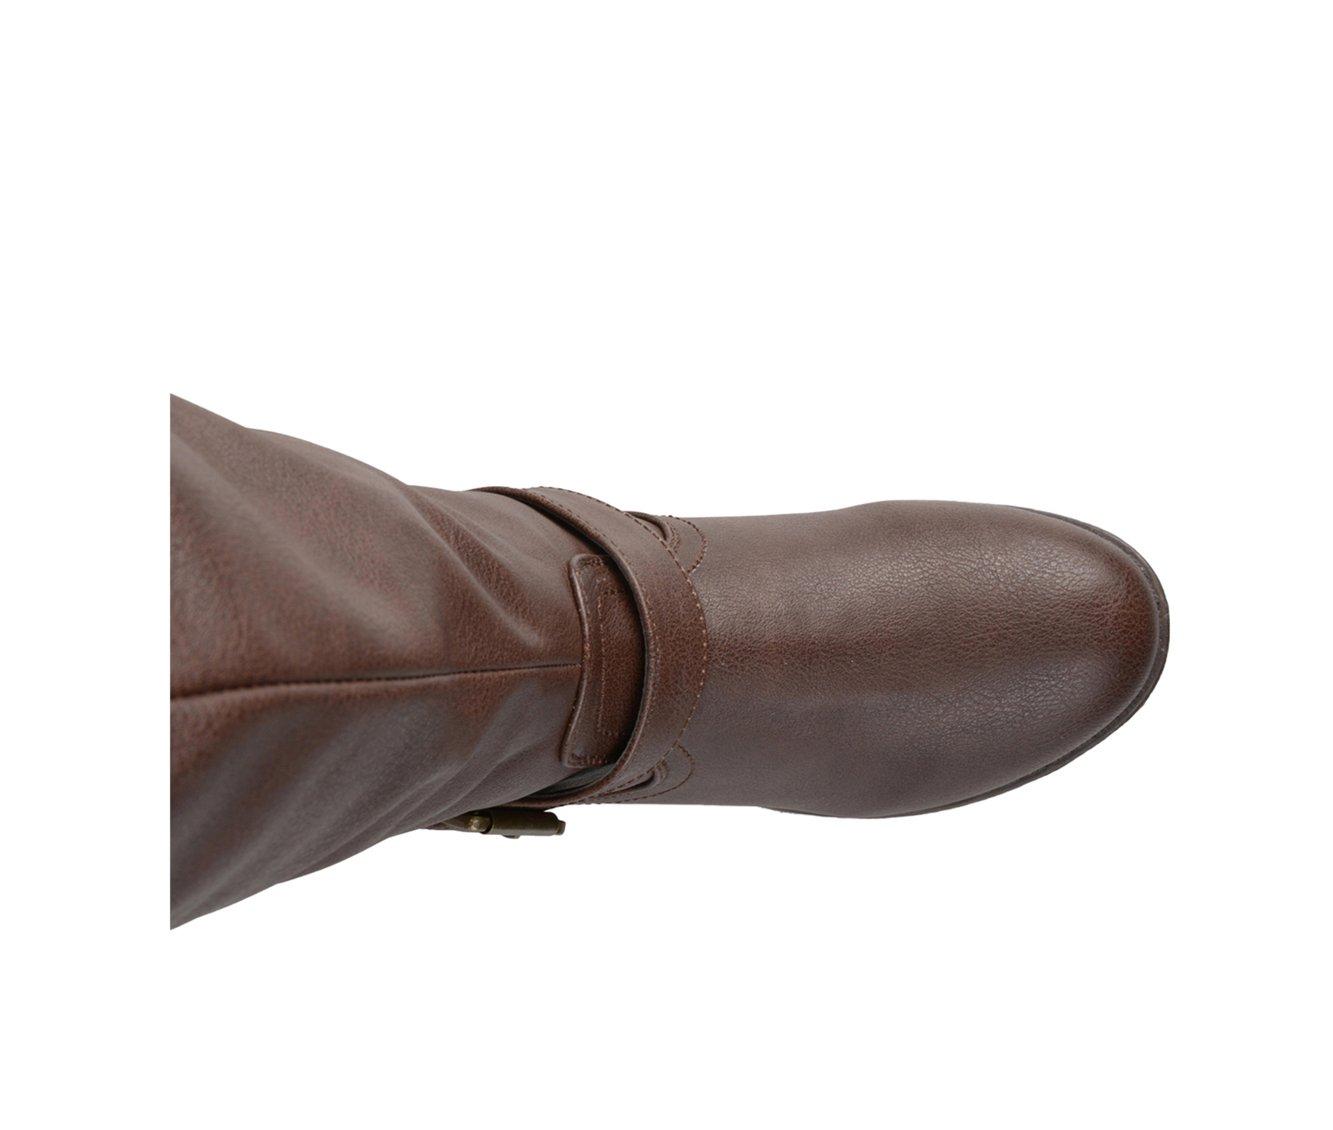 Women's Journee Collection Spokane Wide Calf Knee High Boots